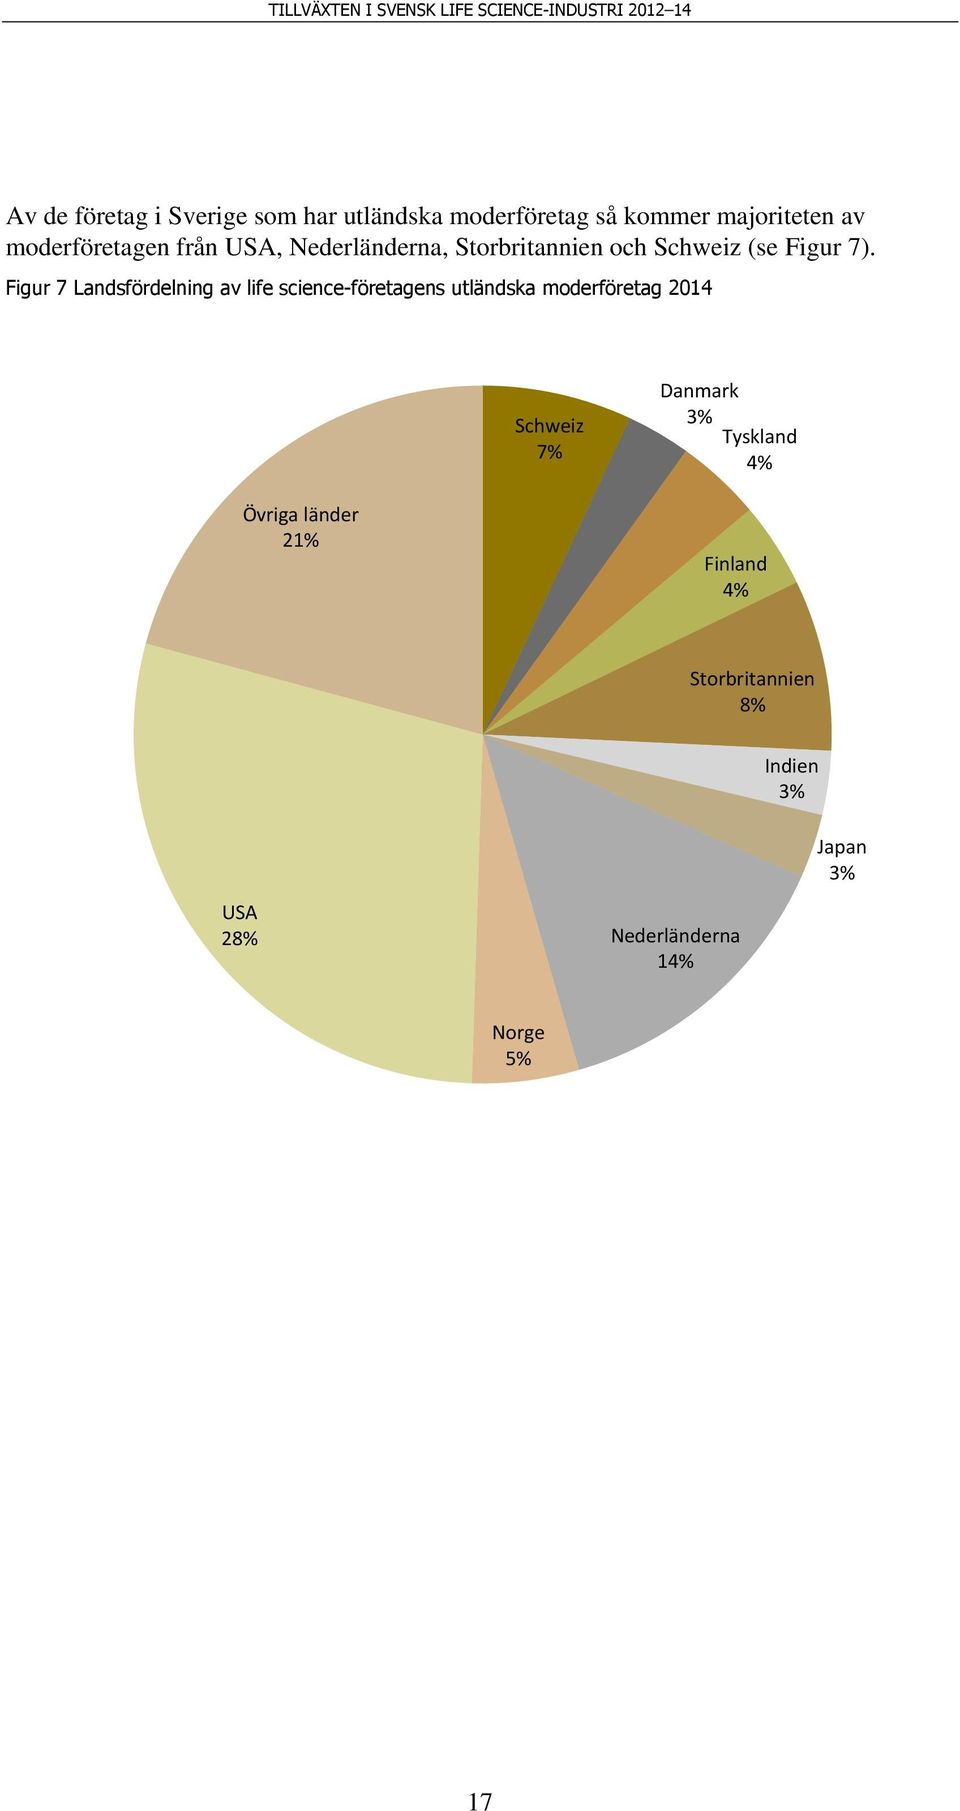 Figur 7 Landsfördelning av life science-företagens utländska moderföretag 2014 Schweiz 7%